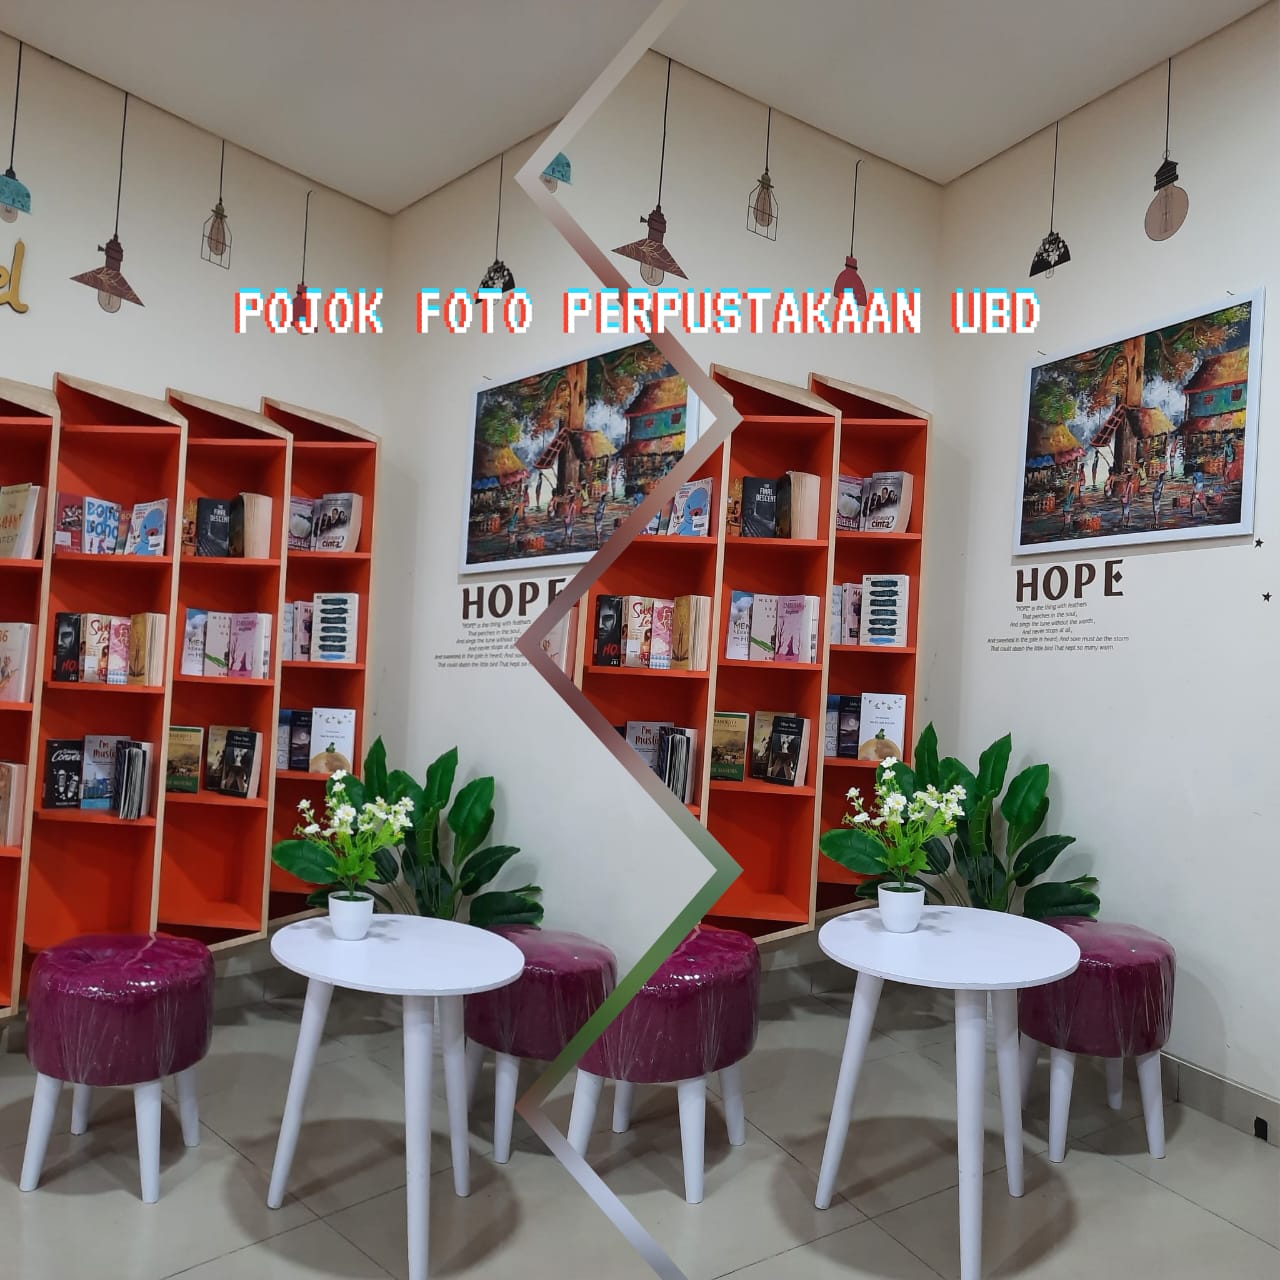 Tarik Minat Mahasiswa untuk Membaca, Perpustakaan Universitas Bina Darma Sediakan Pojok Foto